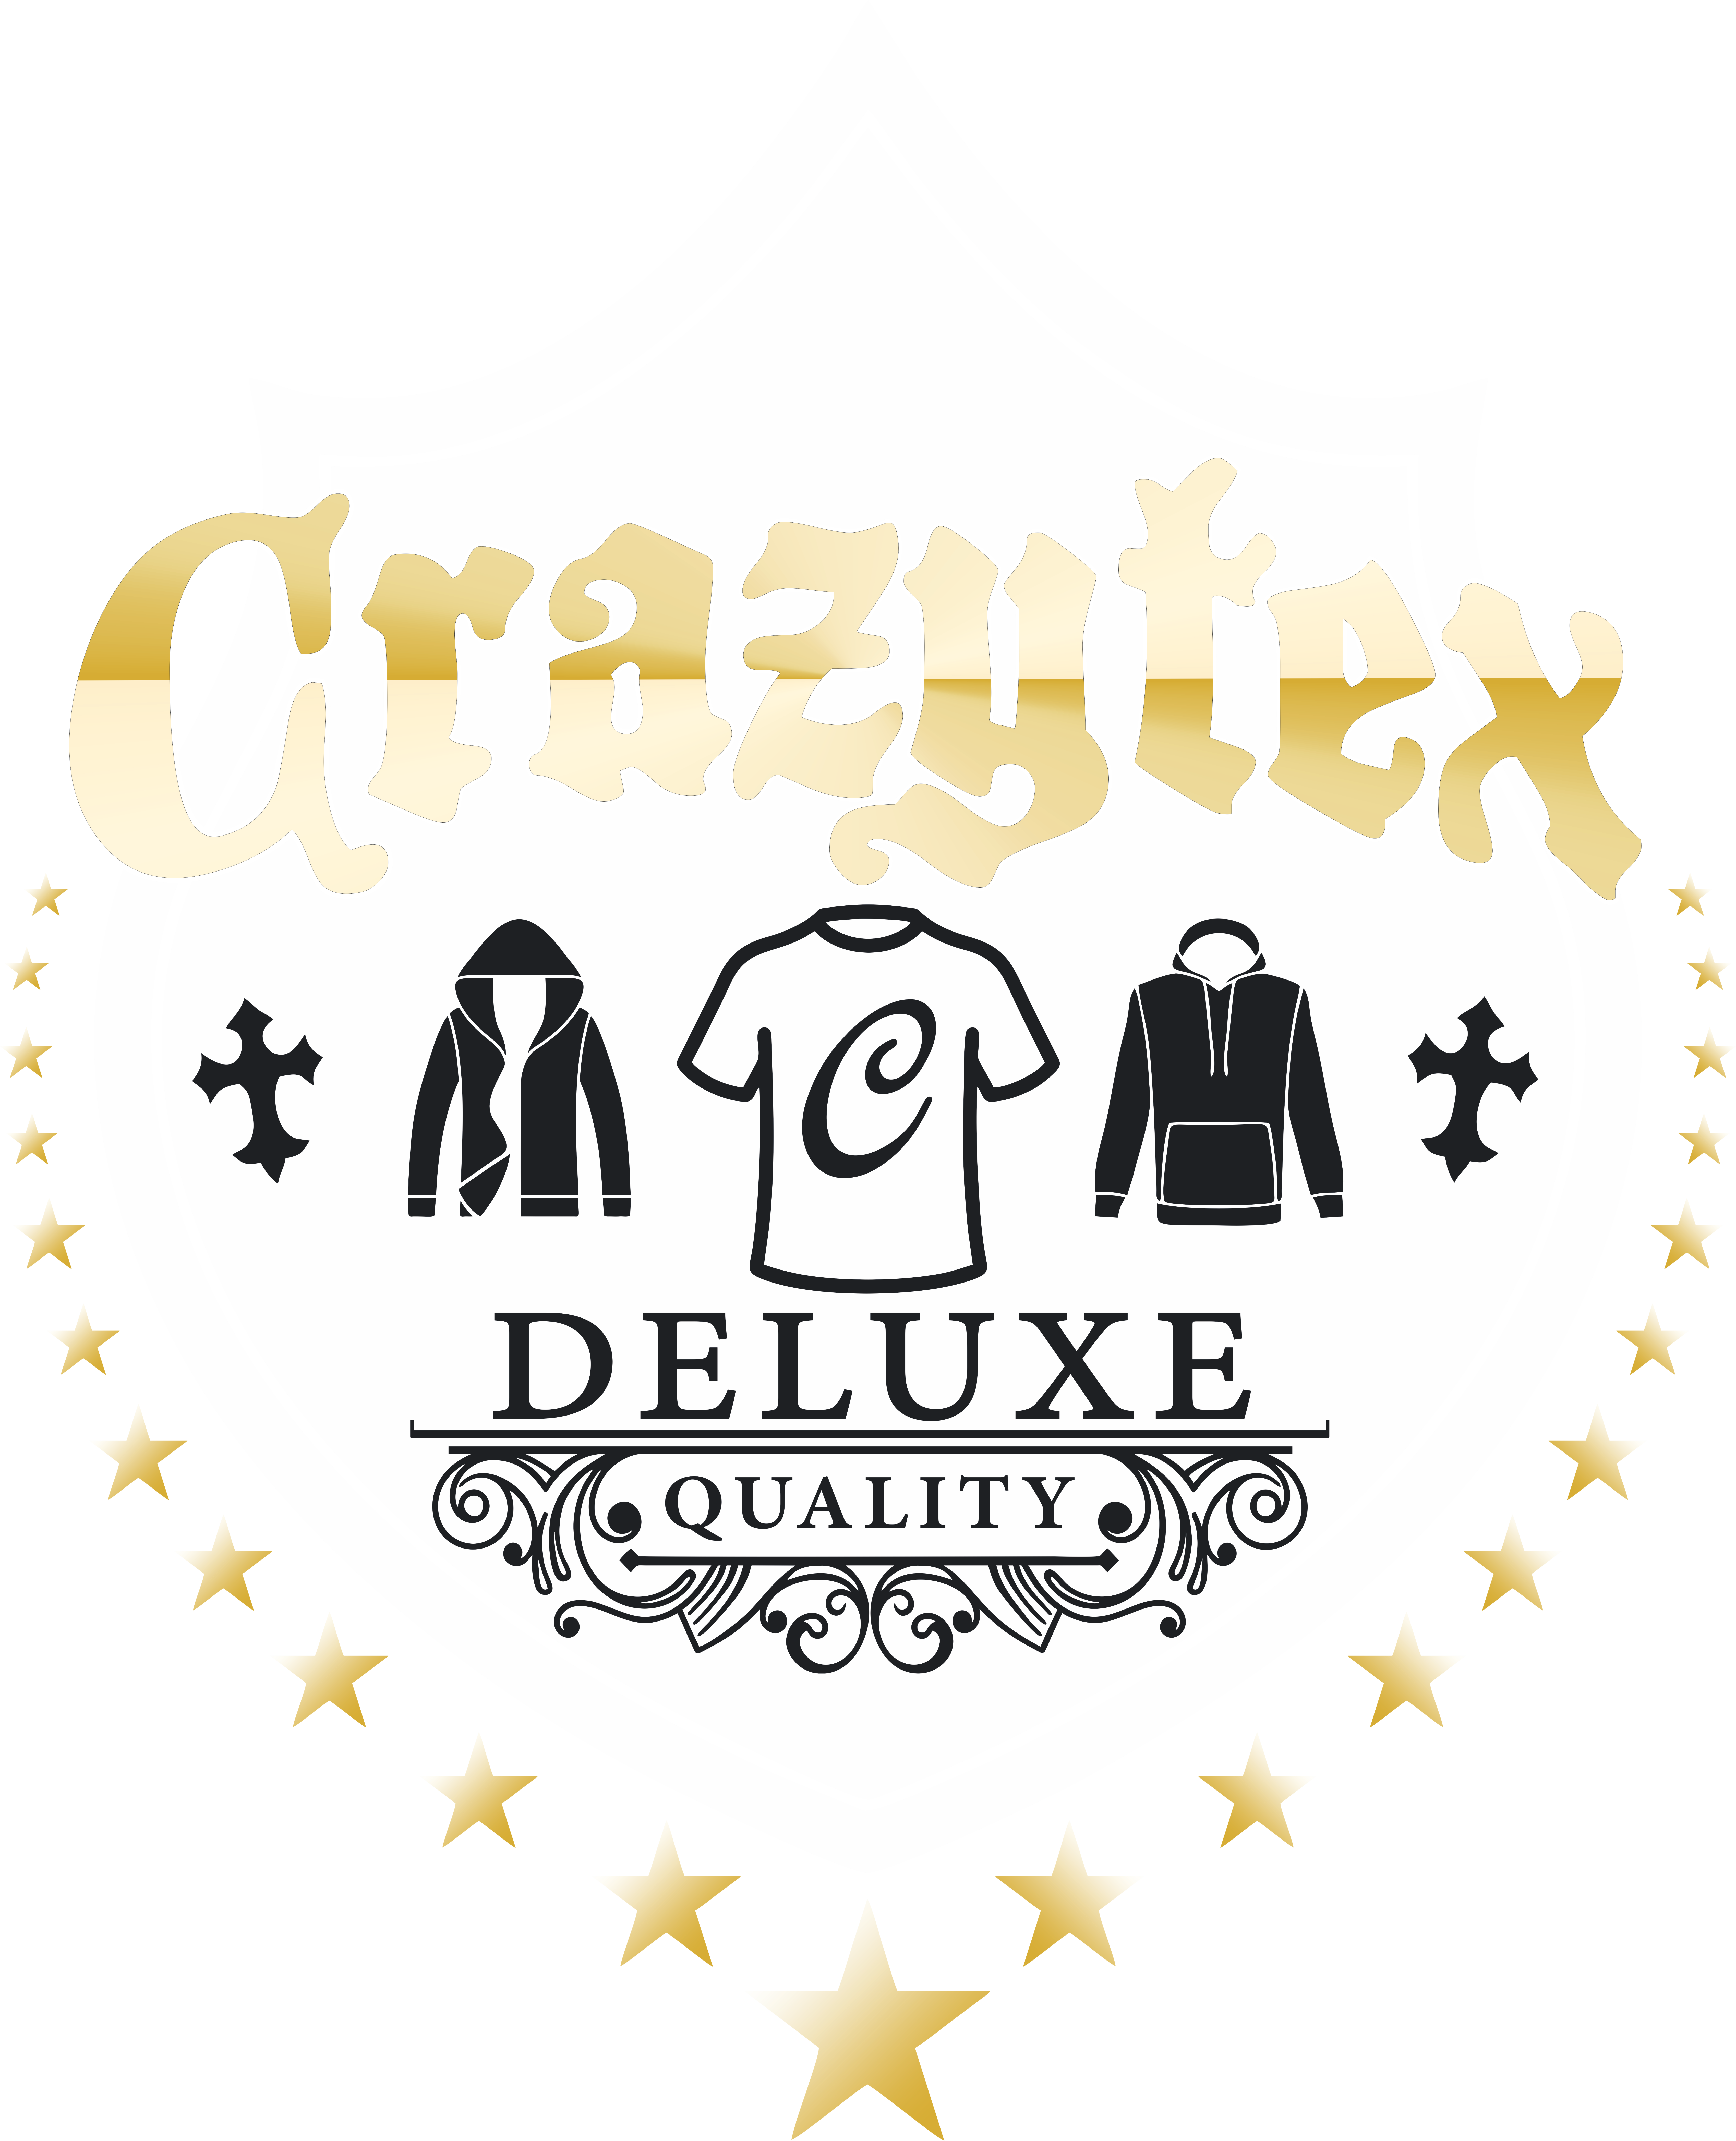 crazytex.de – Werbedruck / Textildruck / Grafikdesign